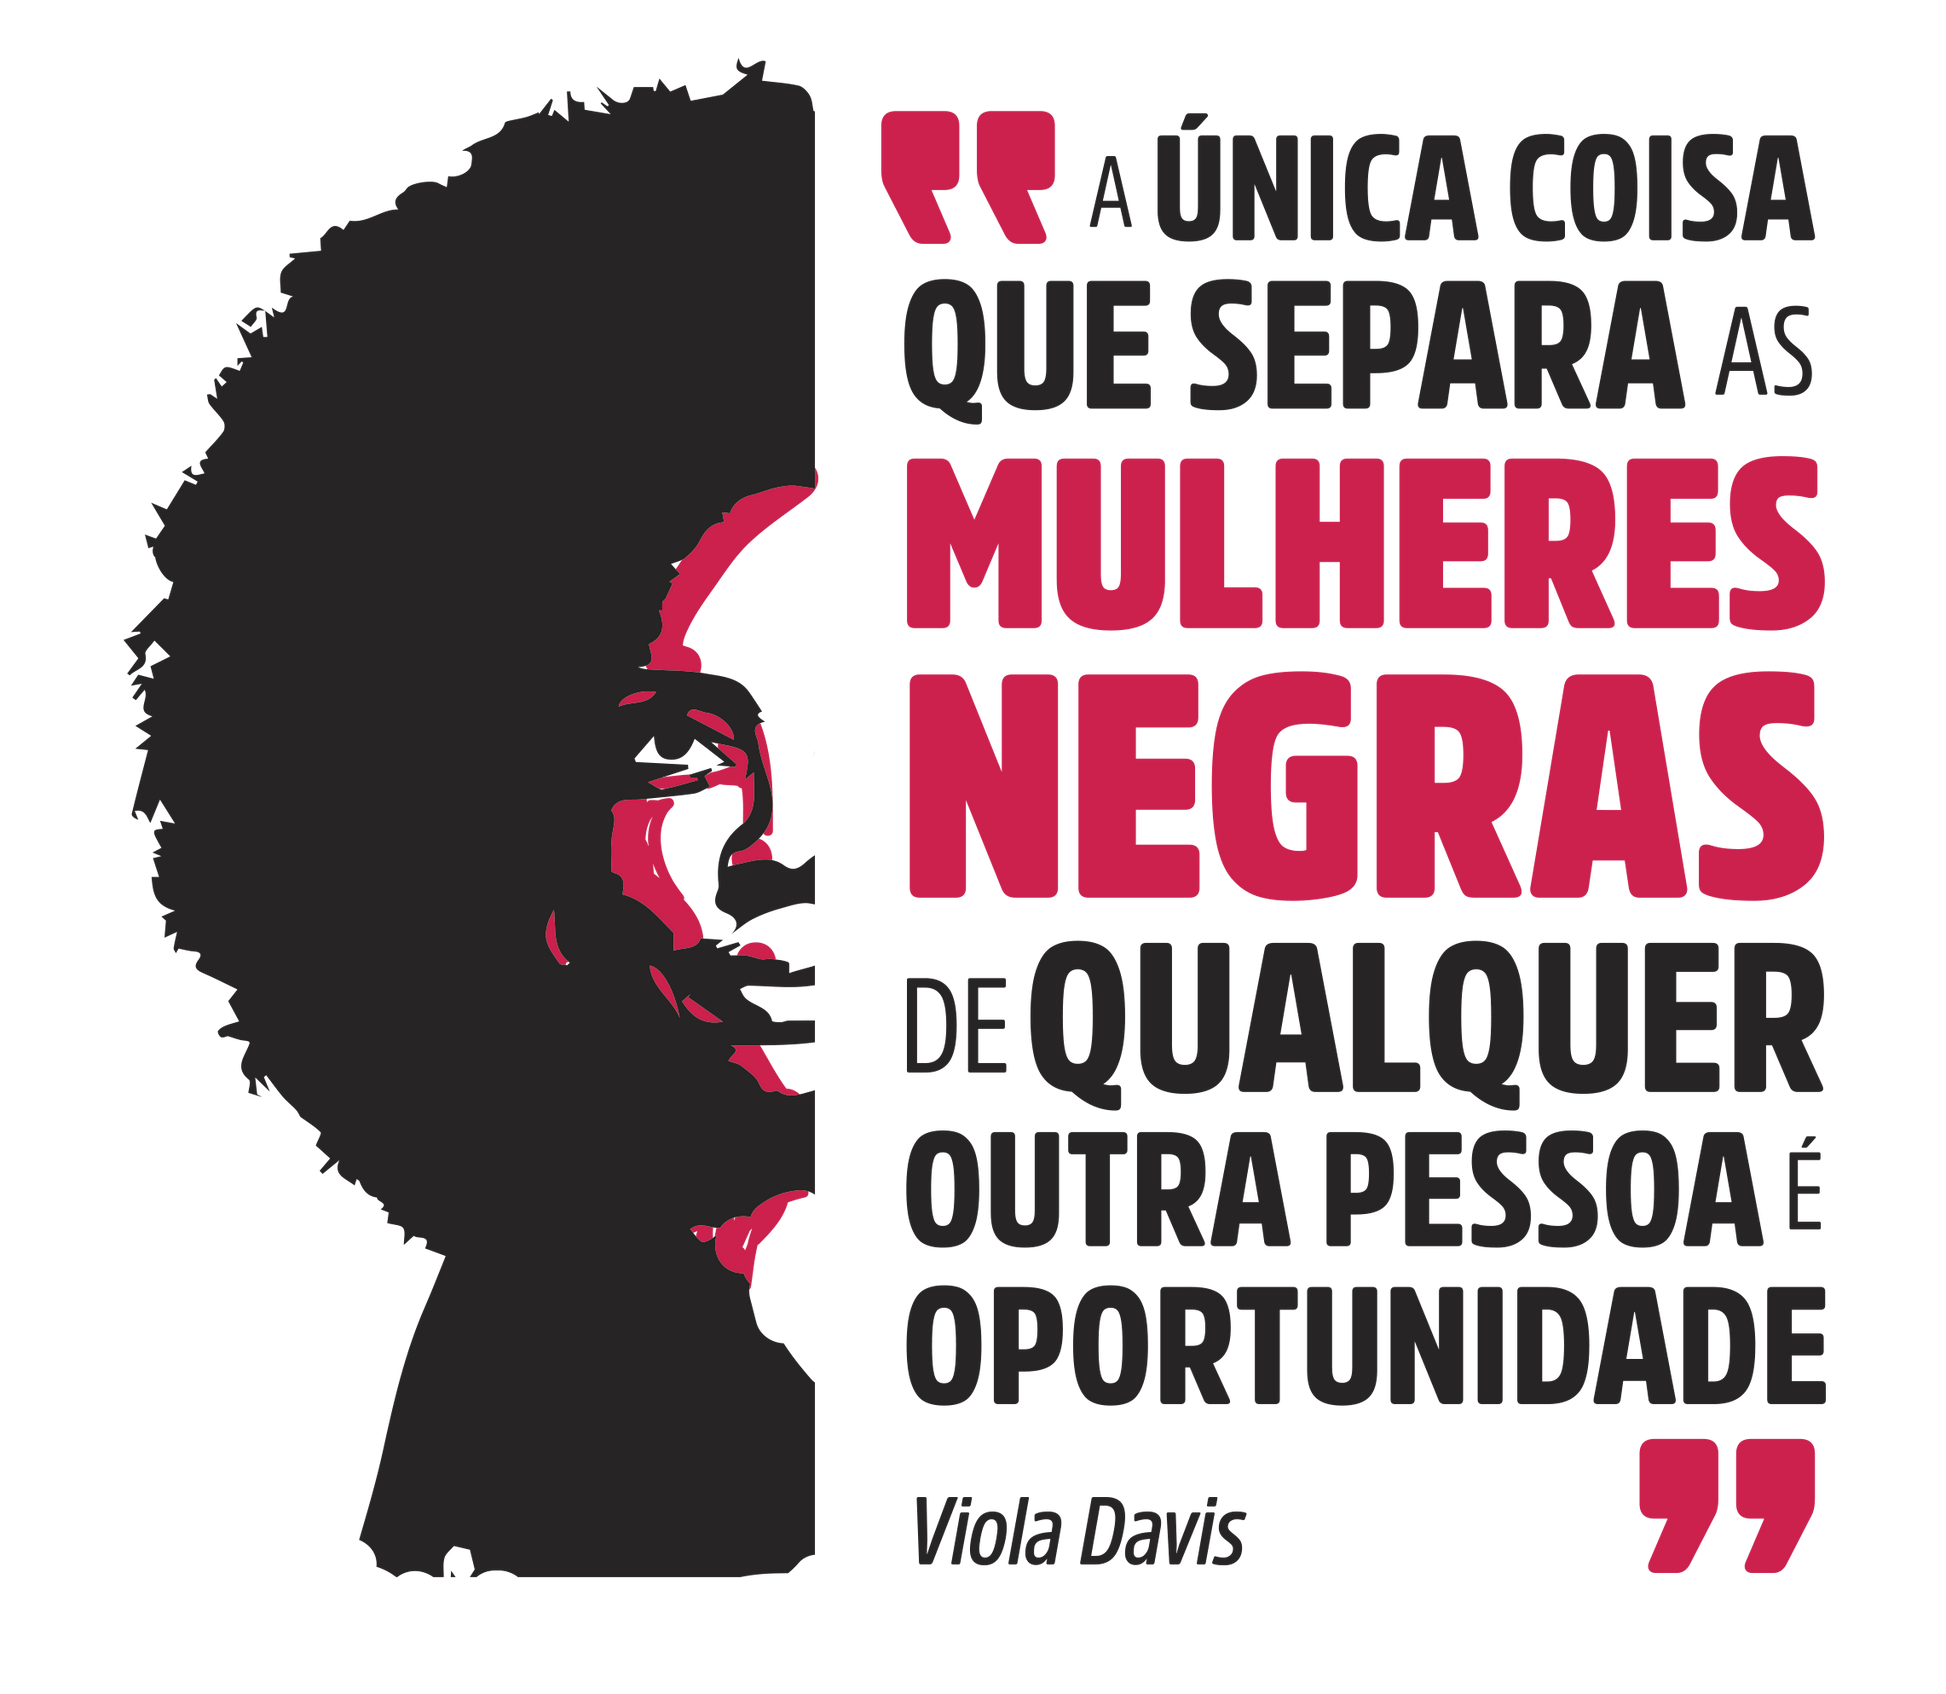 estampa ilustração Viola Davis e a frase "a única coisa que separa as mulheres negras de qualquer outra pessoa é a oportunidade"